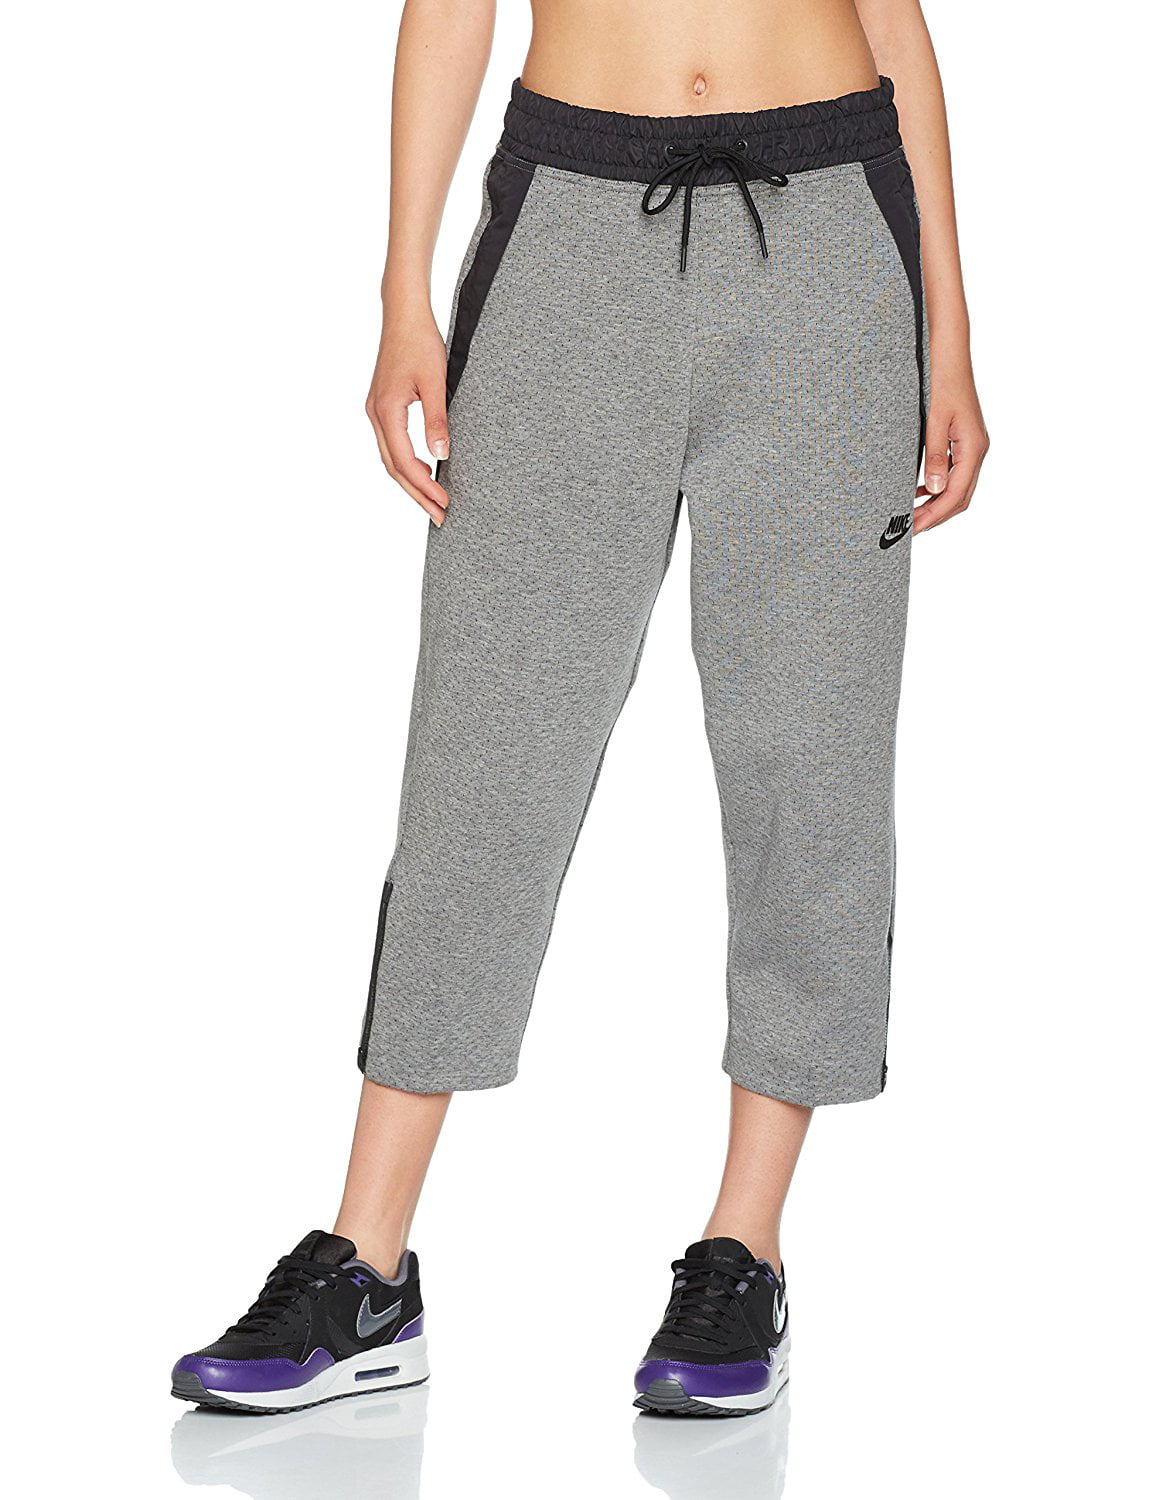 Nike Women's Sportswear Tech Pack Cropped Pants, Carbon Heather